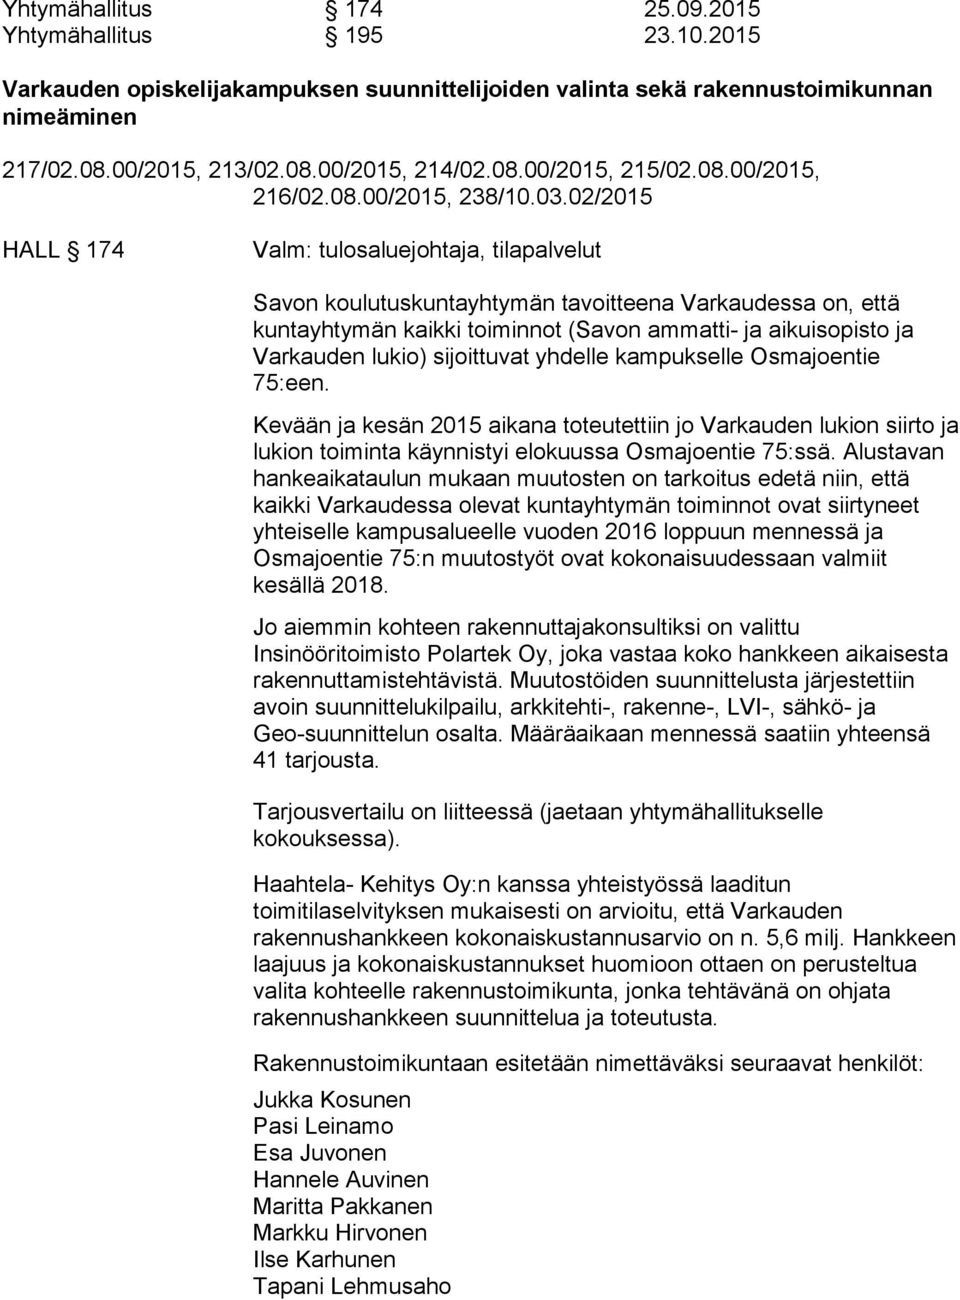 02/2015 HALL 174 Savon koulutuskuntayhtymän tavoitteena Varkaudessa on, että kuntayhtymän kaikki toiminnot (Savon ammatti- ja aikuisopisto ja Varkauden lukio) sijoittuvat yhdelle kampukselle